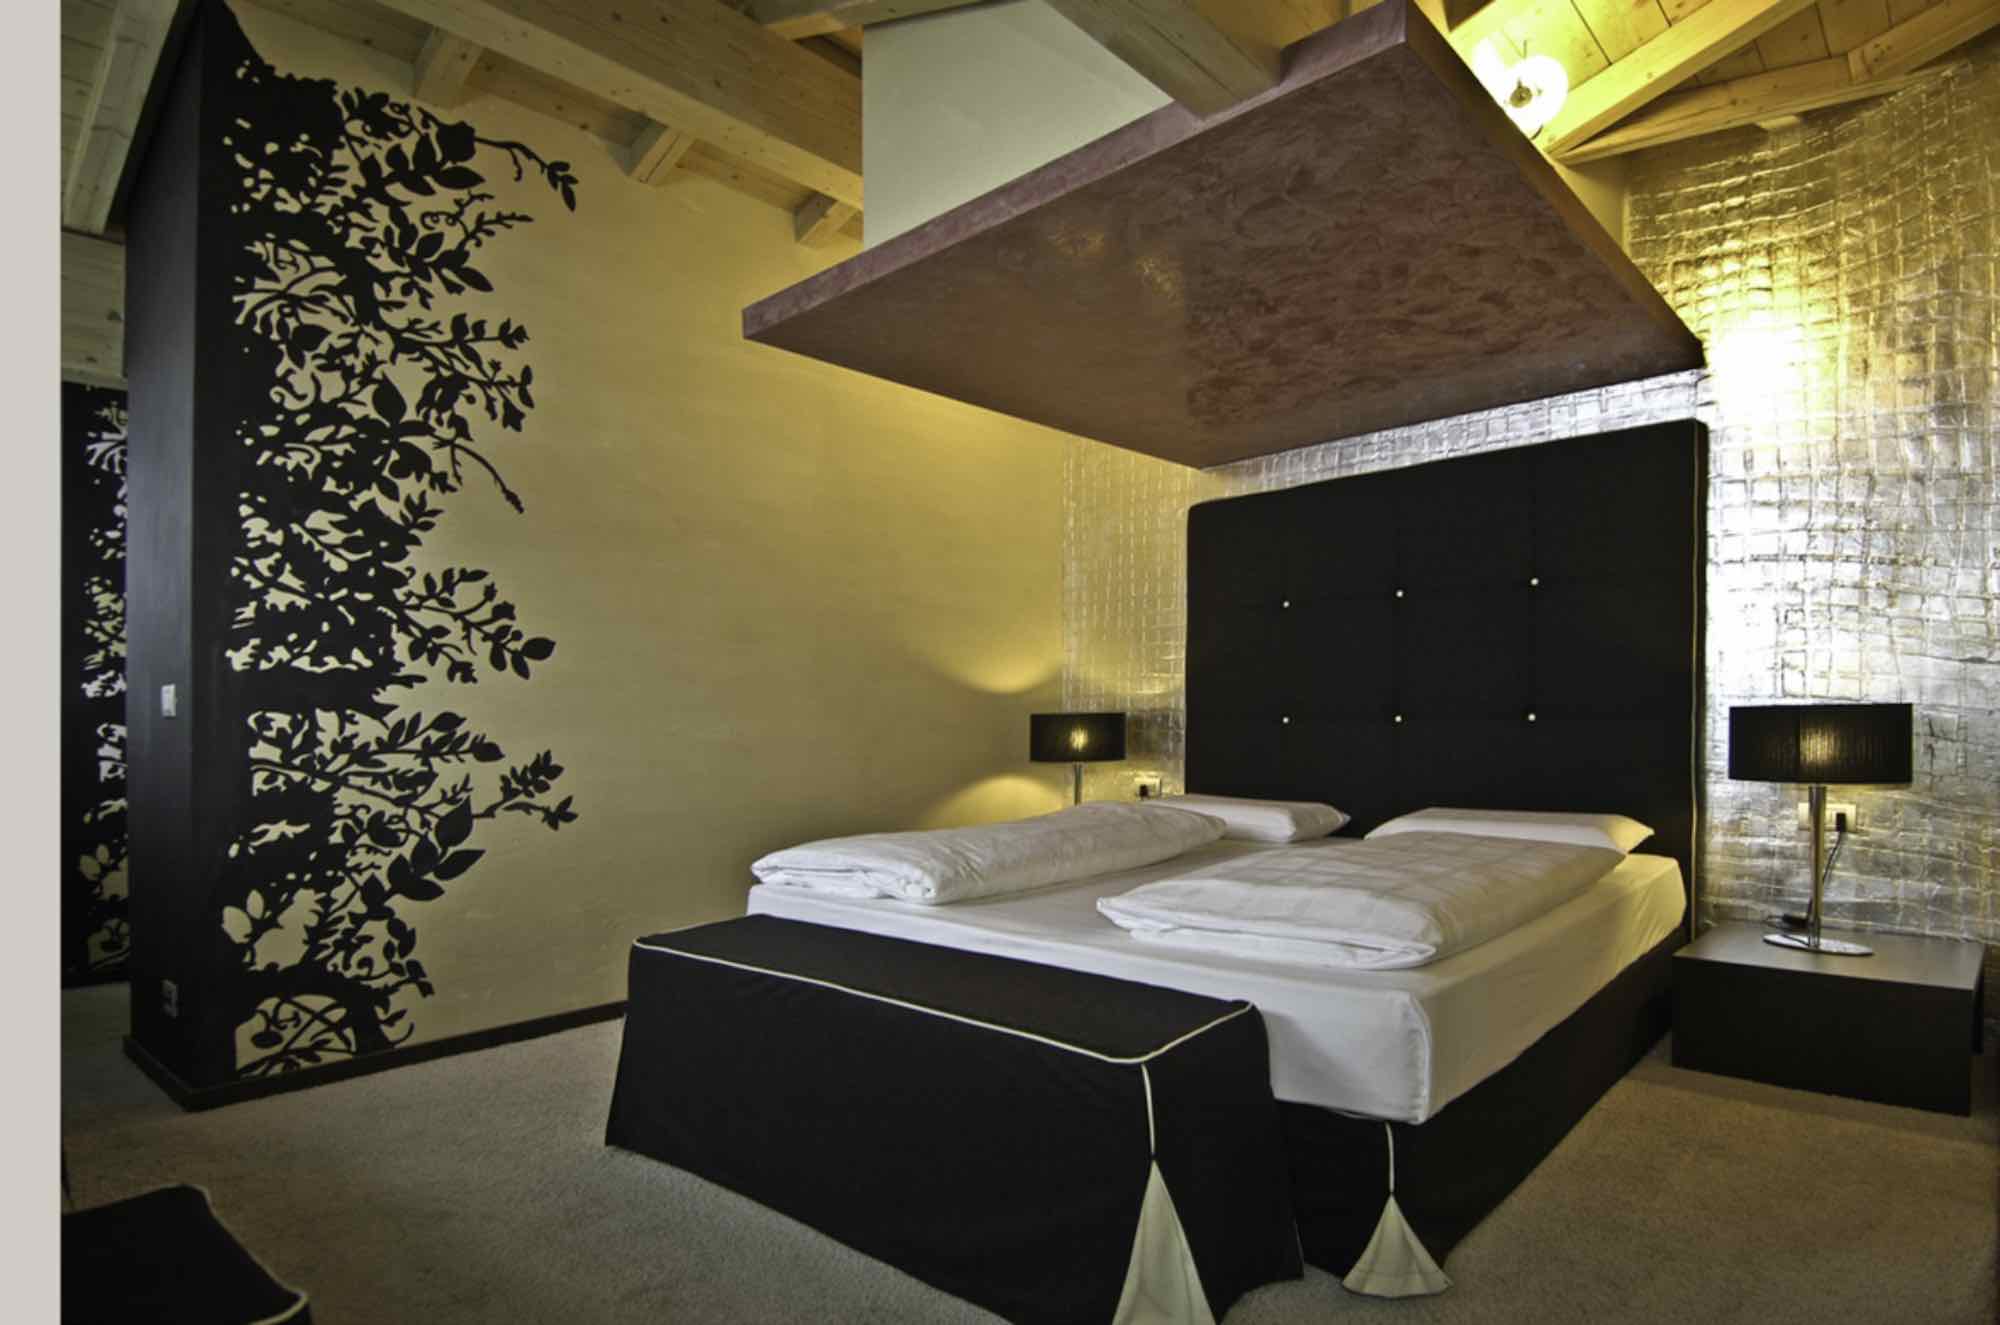 Hotel Concordia - Via Plan N.114, Livigno 23041 - Room - Grace Kelly Suite 1